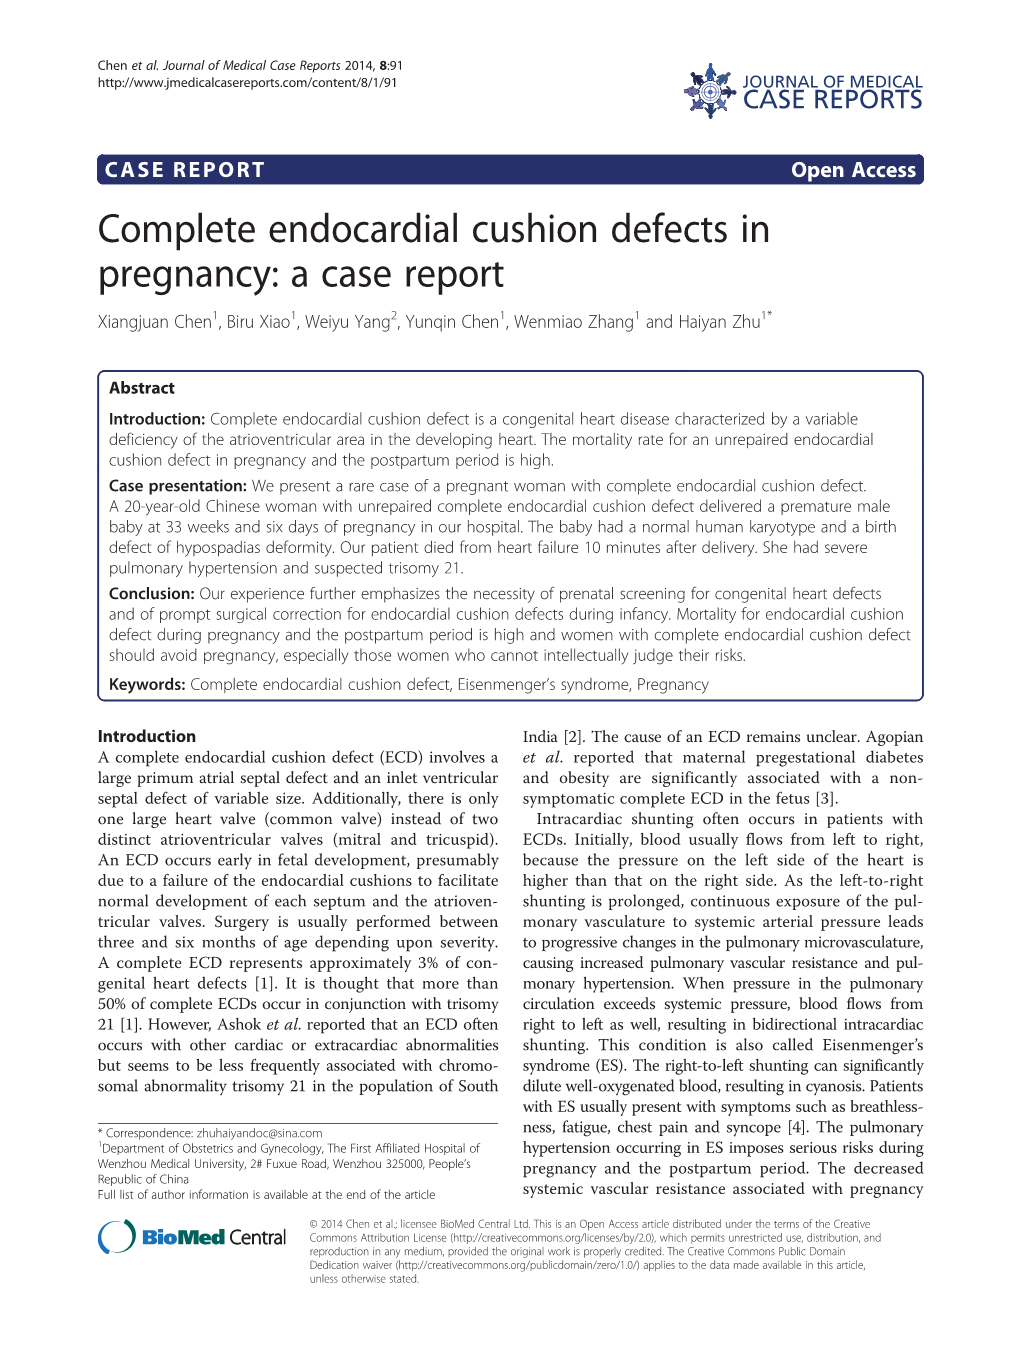 Complete Endocardial Cushion Defects in Pregnancy: a Case Report Xiangjuan Chen1, Biru Xiao1, Weiyu Yang2, Yunqin Chen1, Wenmiao Zhang1 and Haiyan Zhu1*